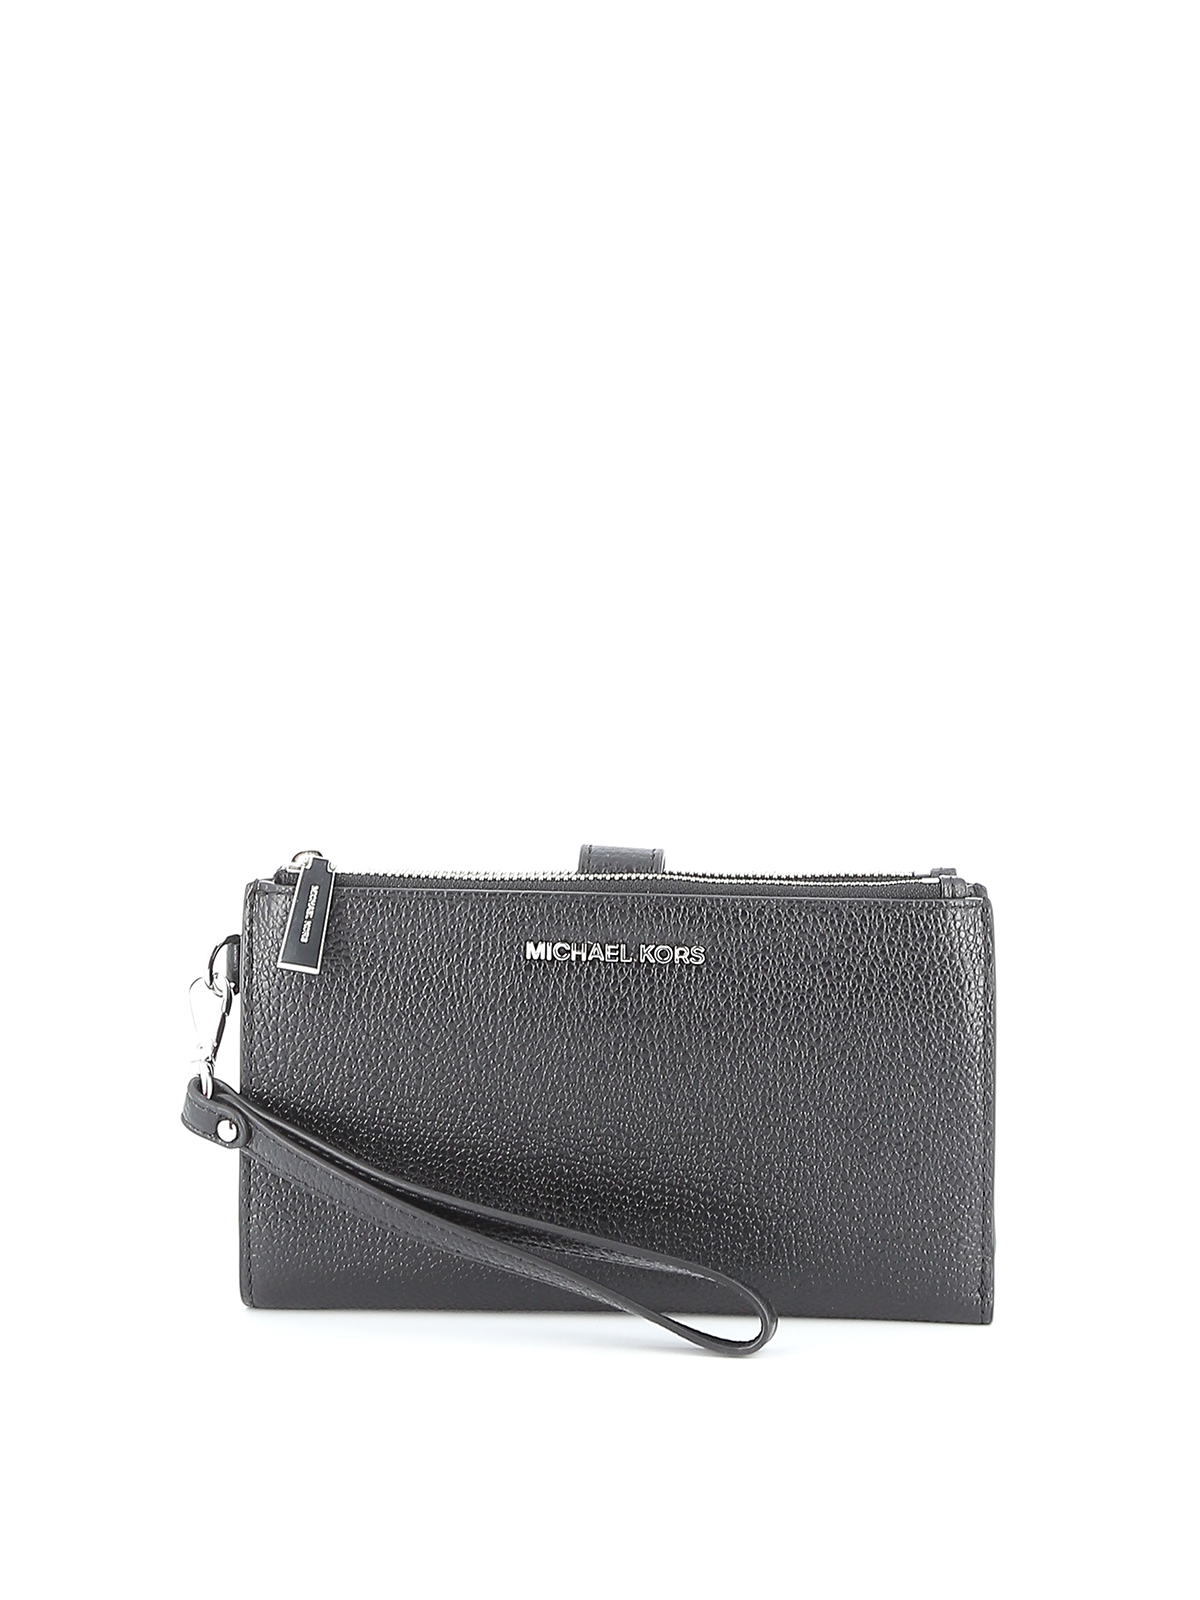 Wallets & purses Michael Kors - Jet Set leather double zip wallet